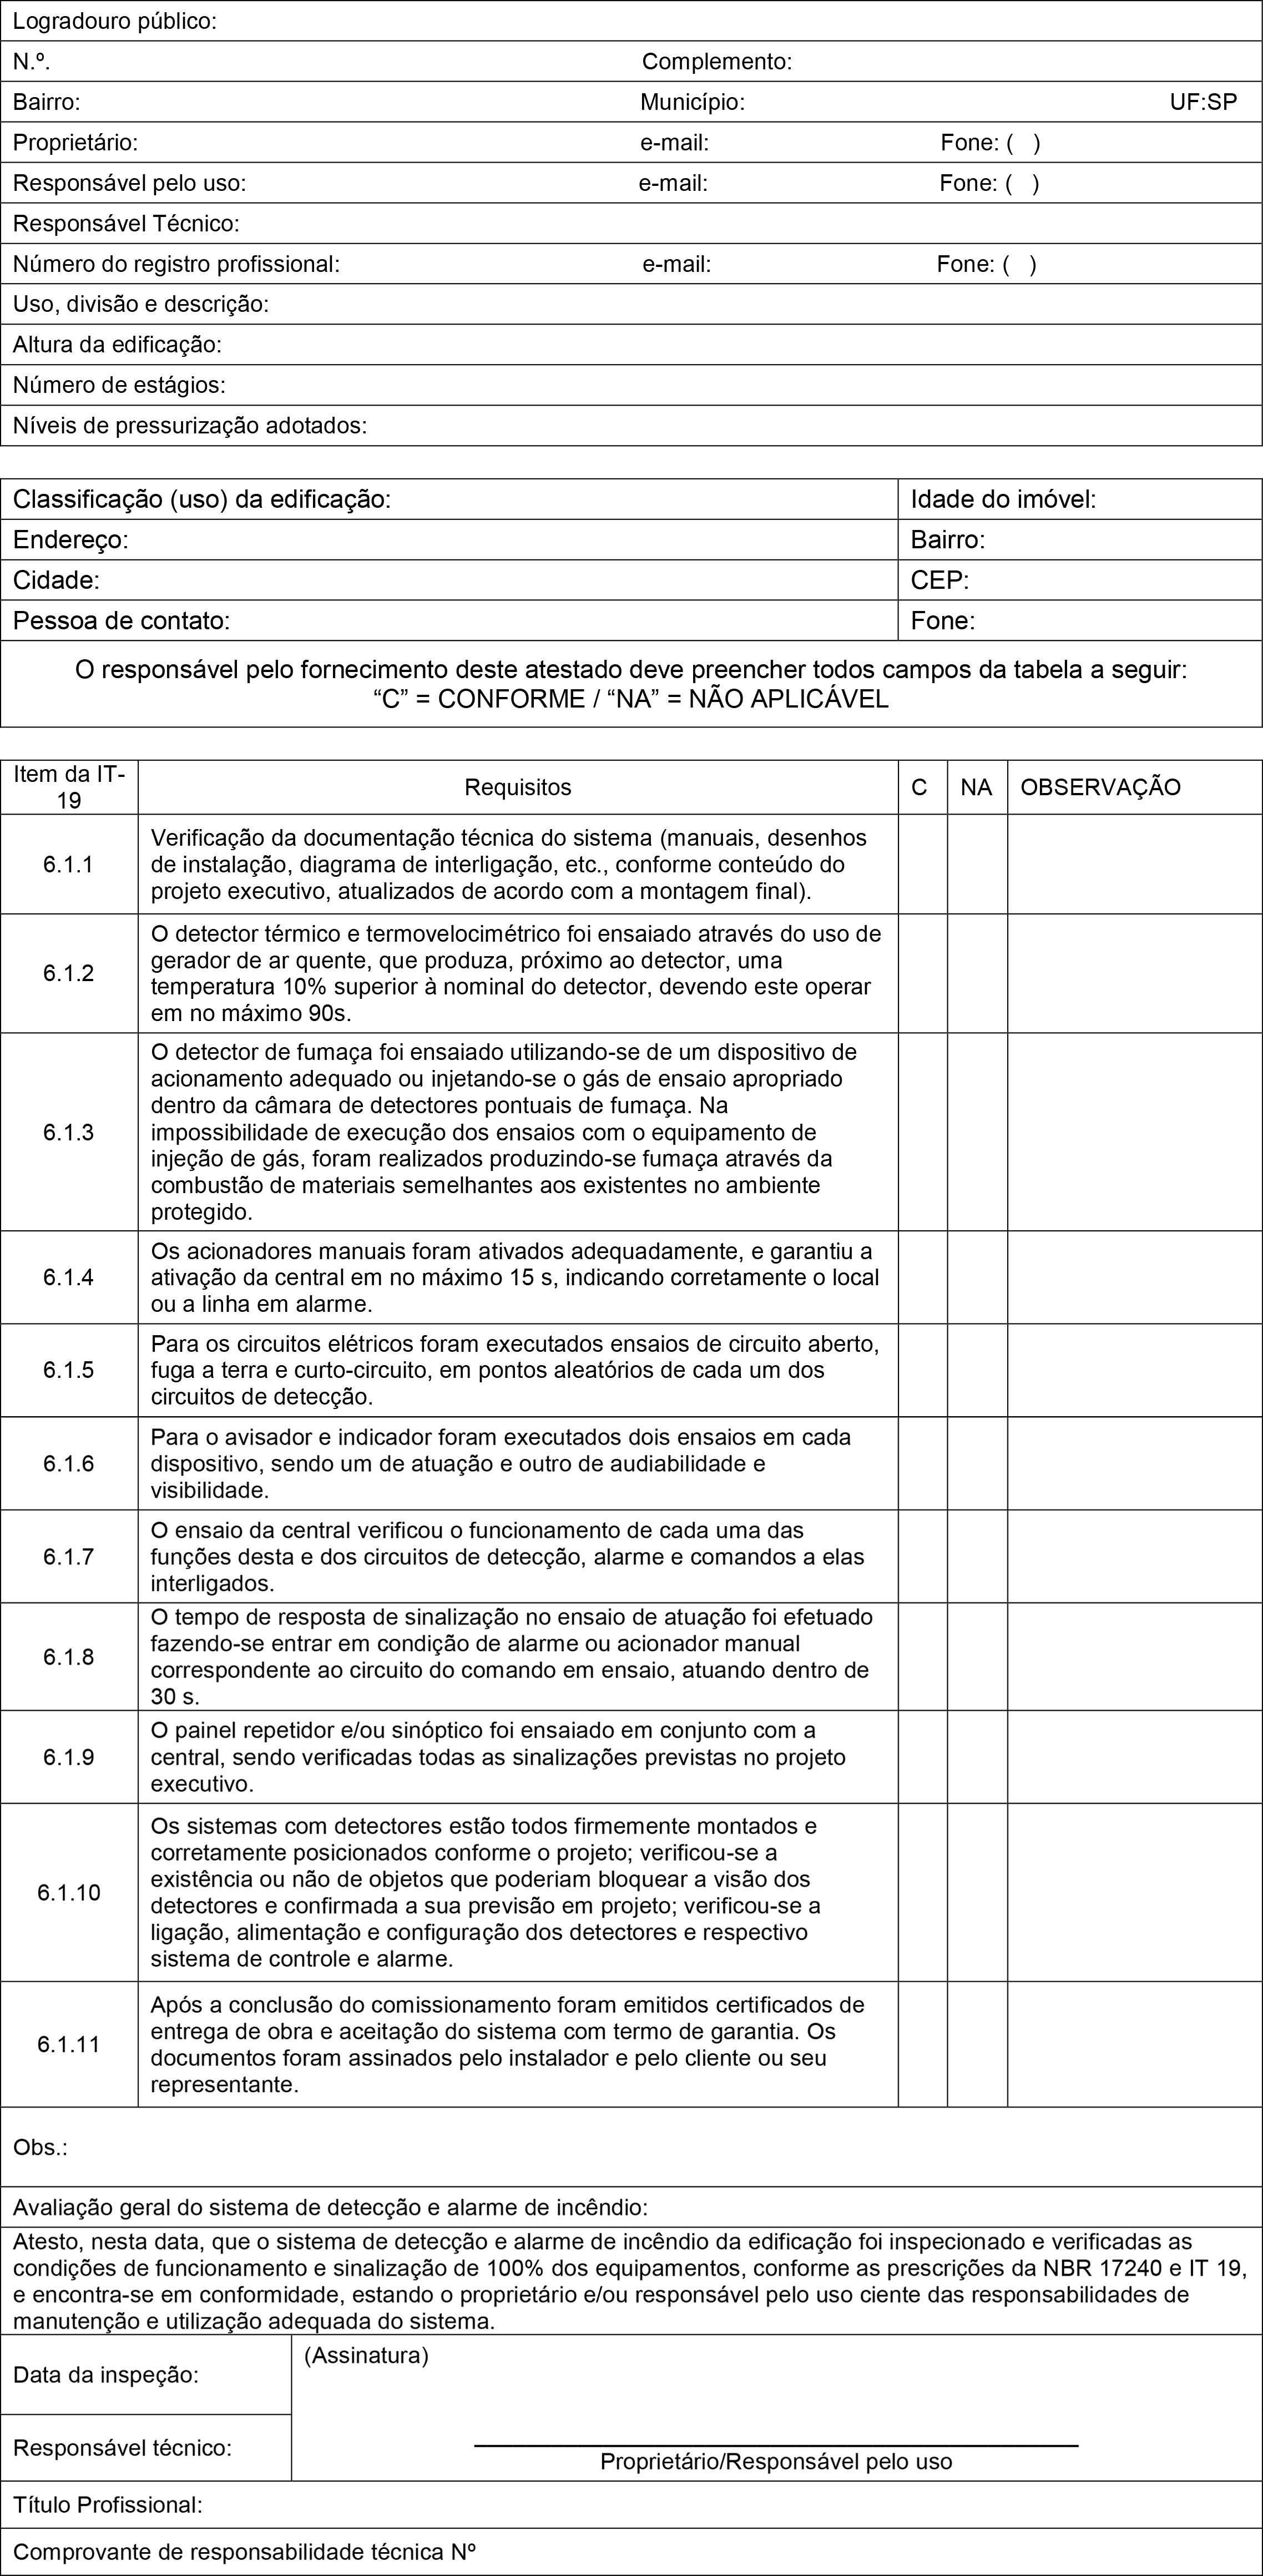 Anexo A: Relatório de Comissionamento e Inspeção Periódica do Sistema de Detecção e Alarme de Incêndio